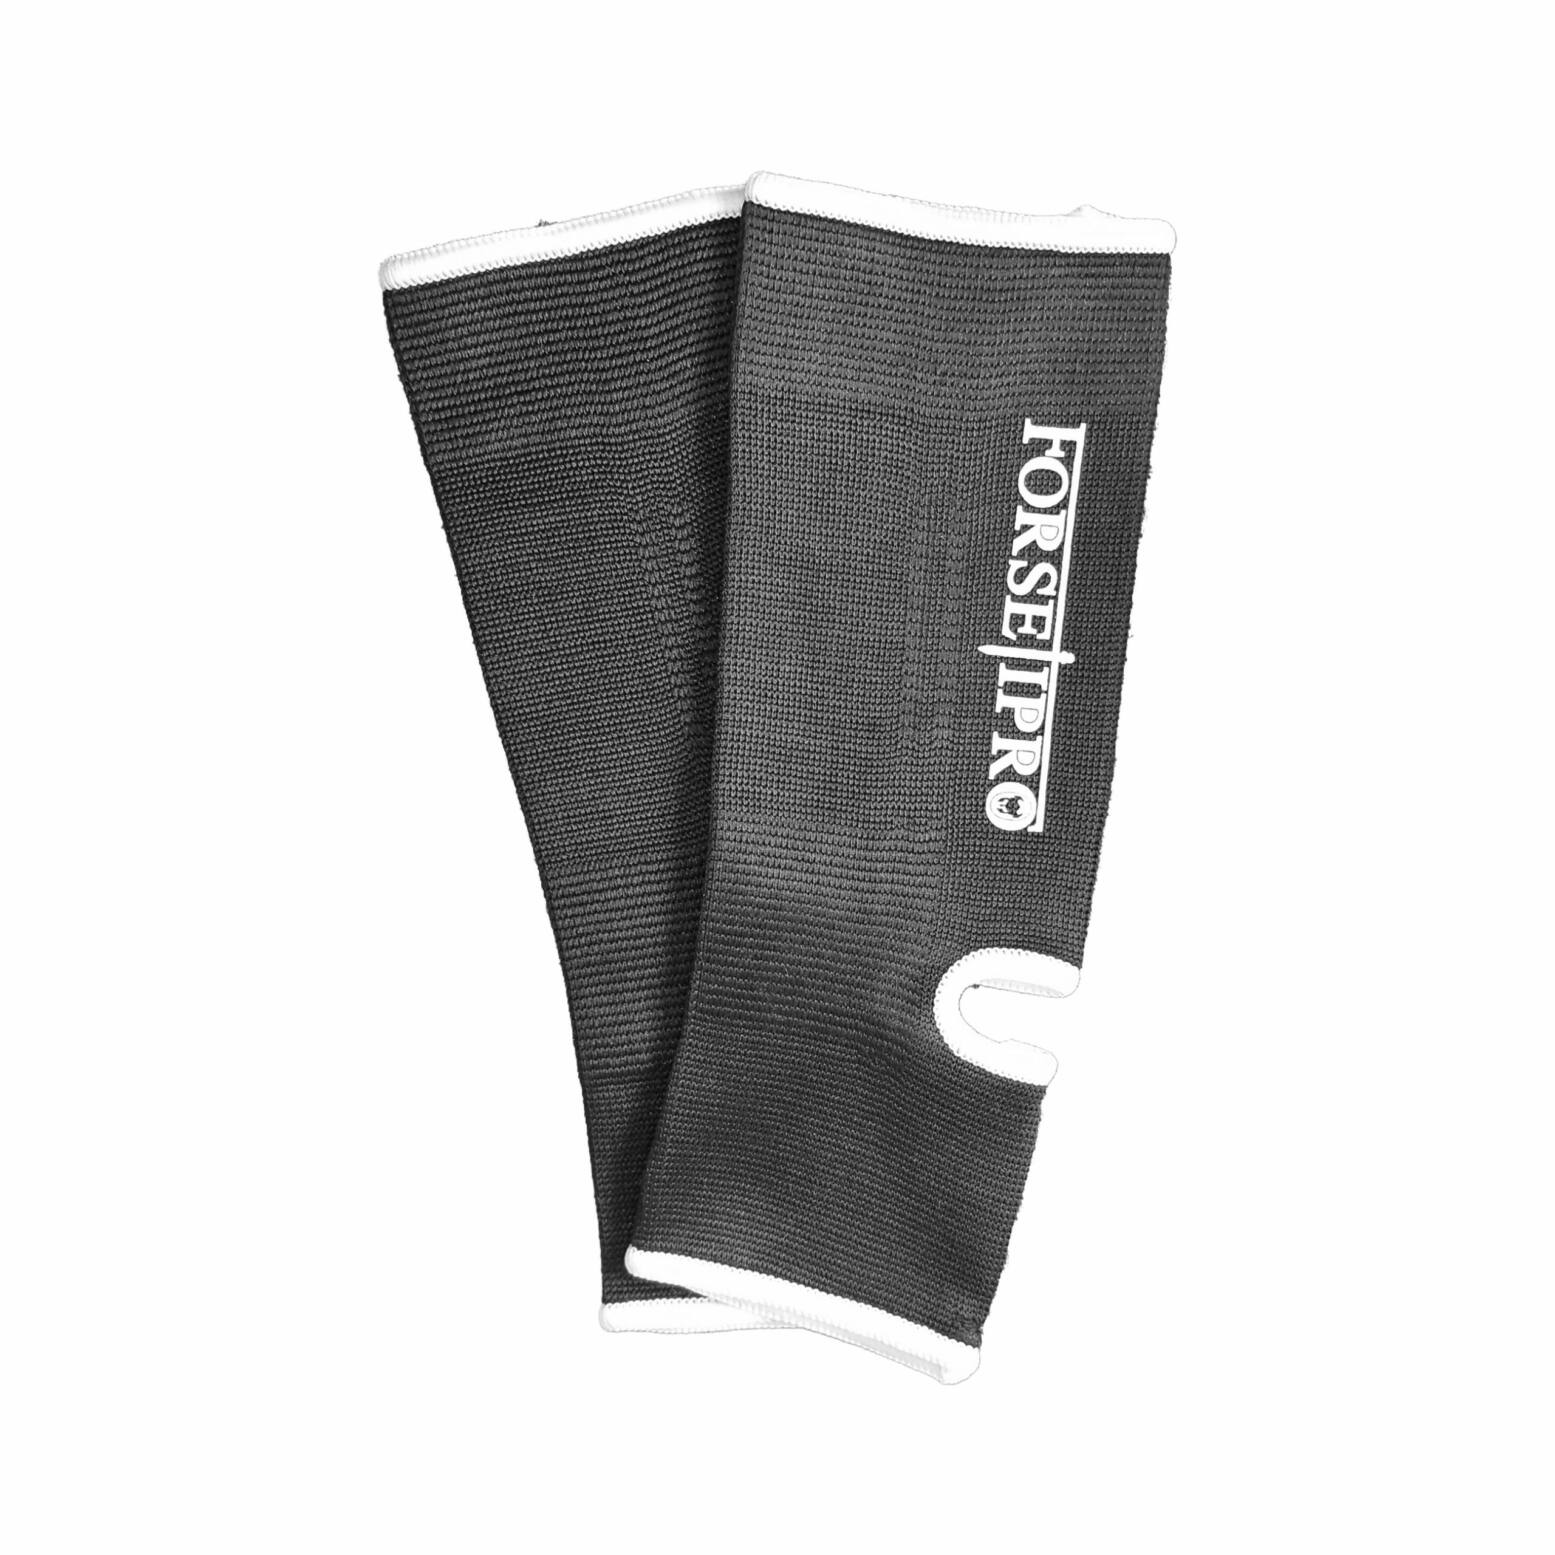 Forseti Pro Enkelkousen B-Stock – Zwart met wit 1